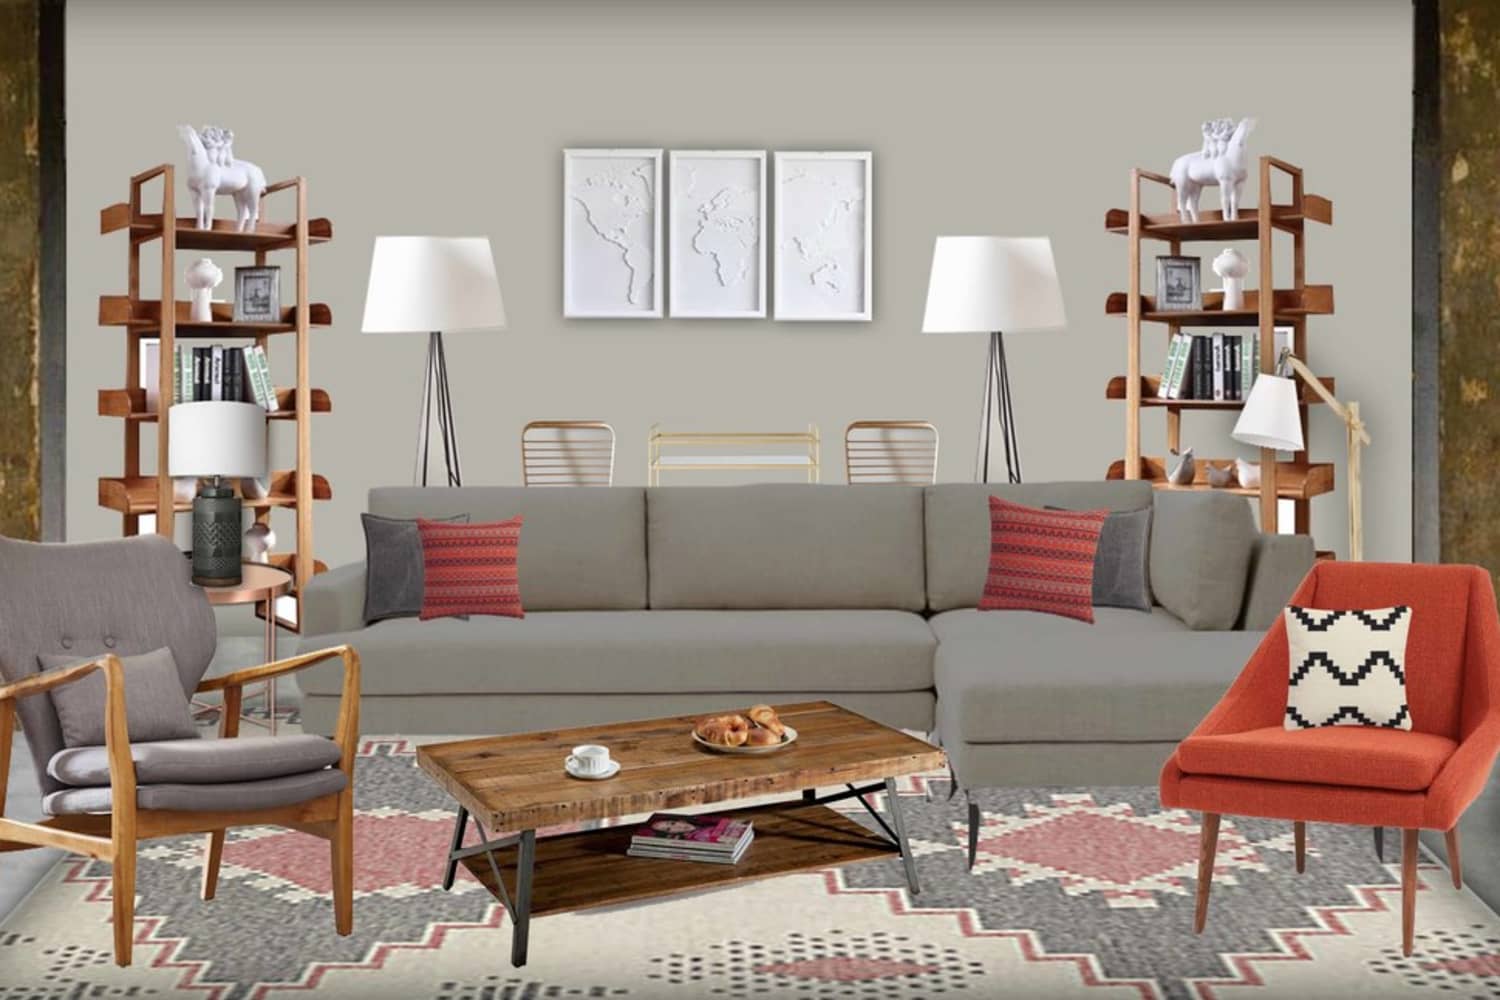 Home Depot сега предлага услуги за интериорен дизайн